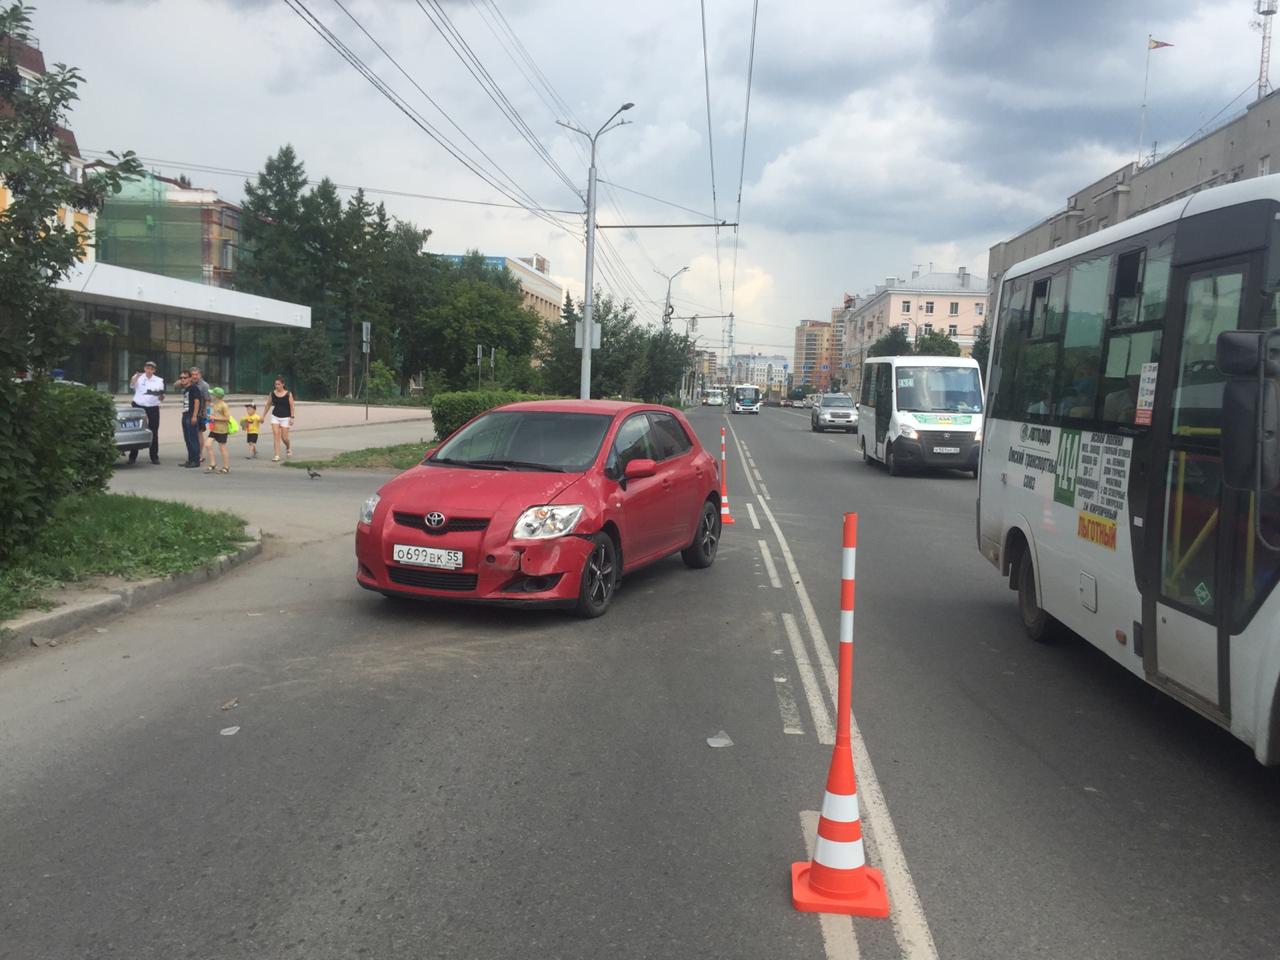 У омского ТЮЗа водитель въехал в иномарку и сбил пешехода #Новости #Общество #Омск